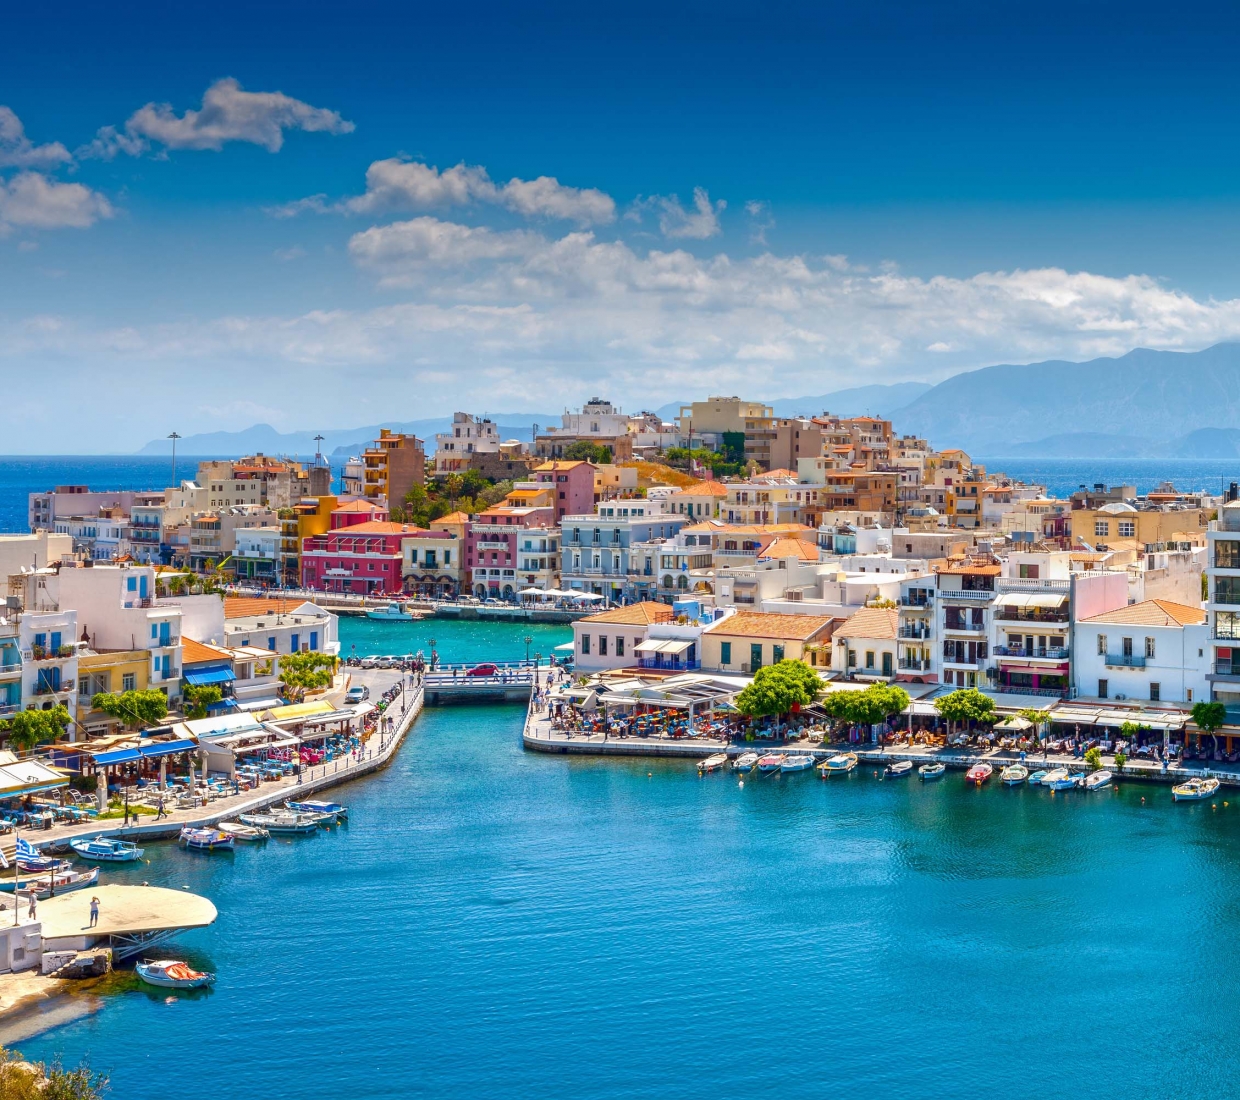 Hoteles con encanto en Creta, hoteles de lujo y casas rurales